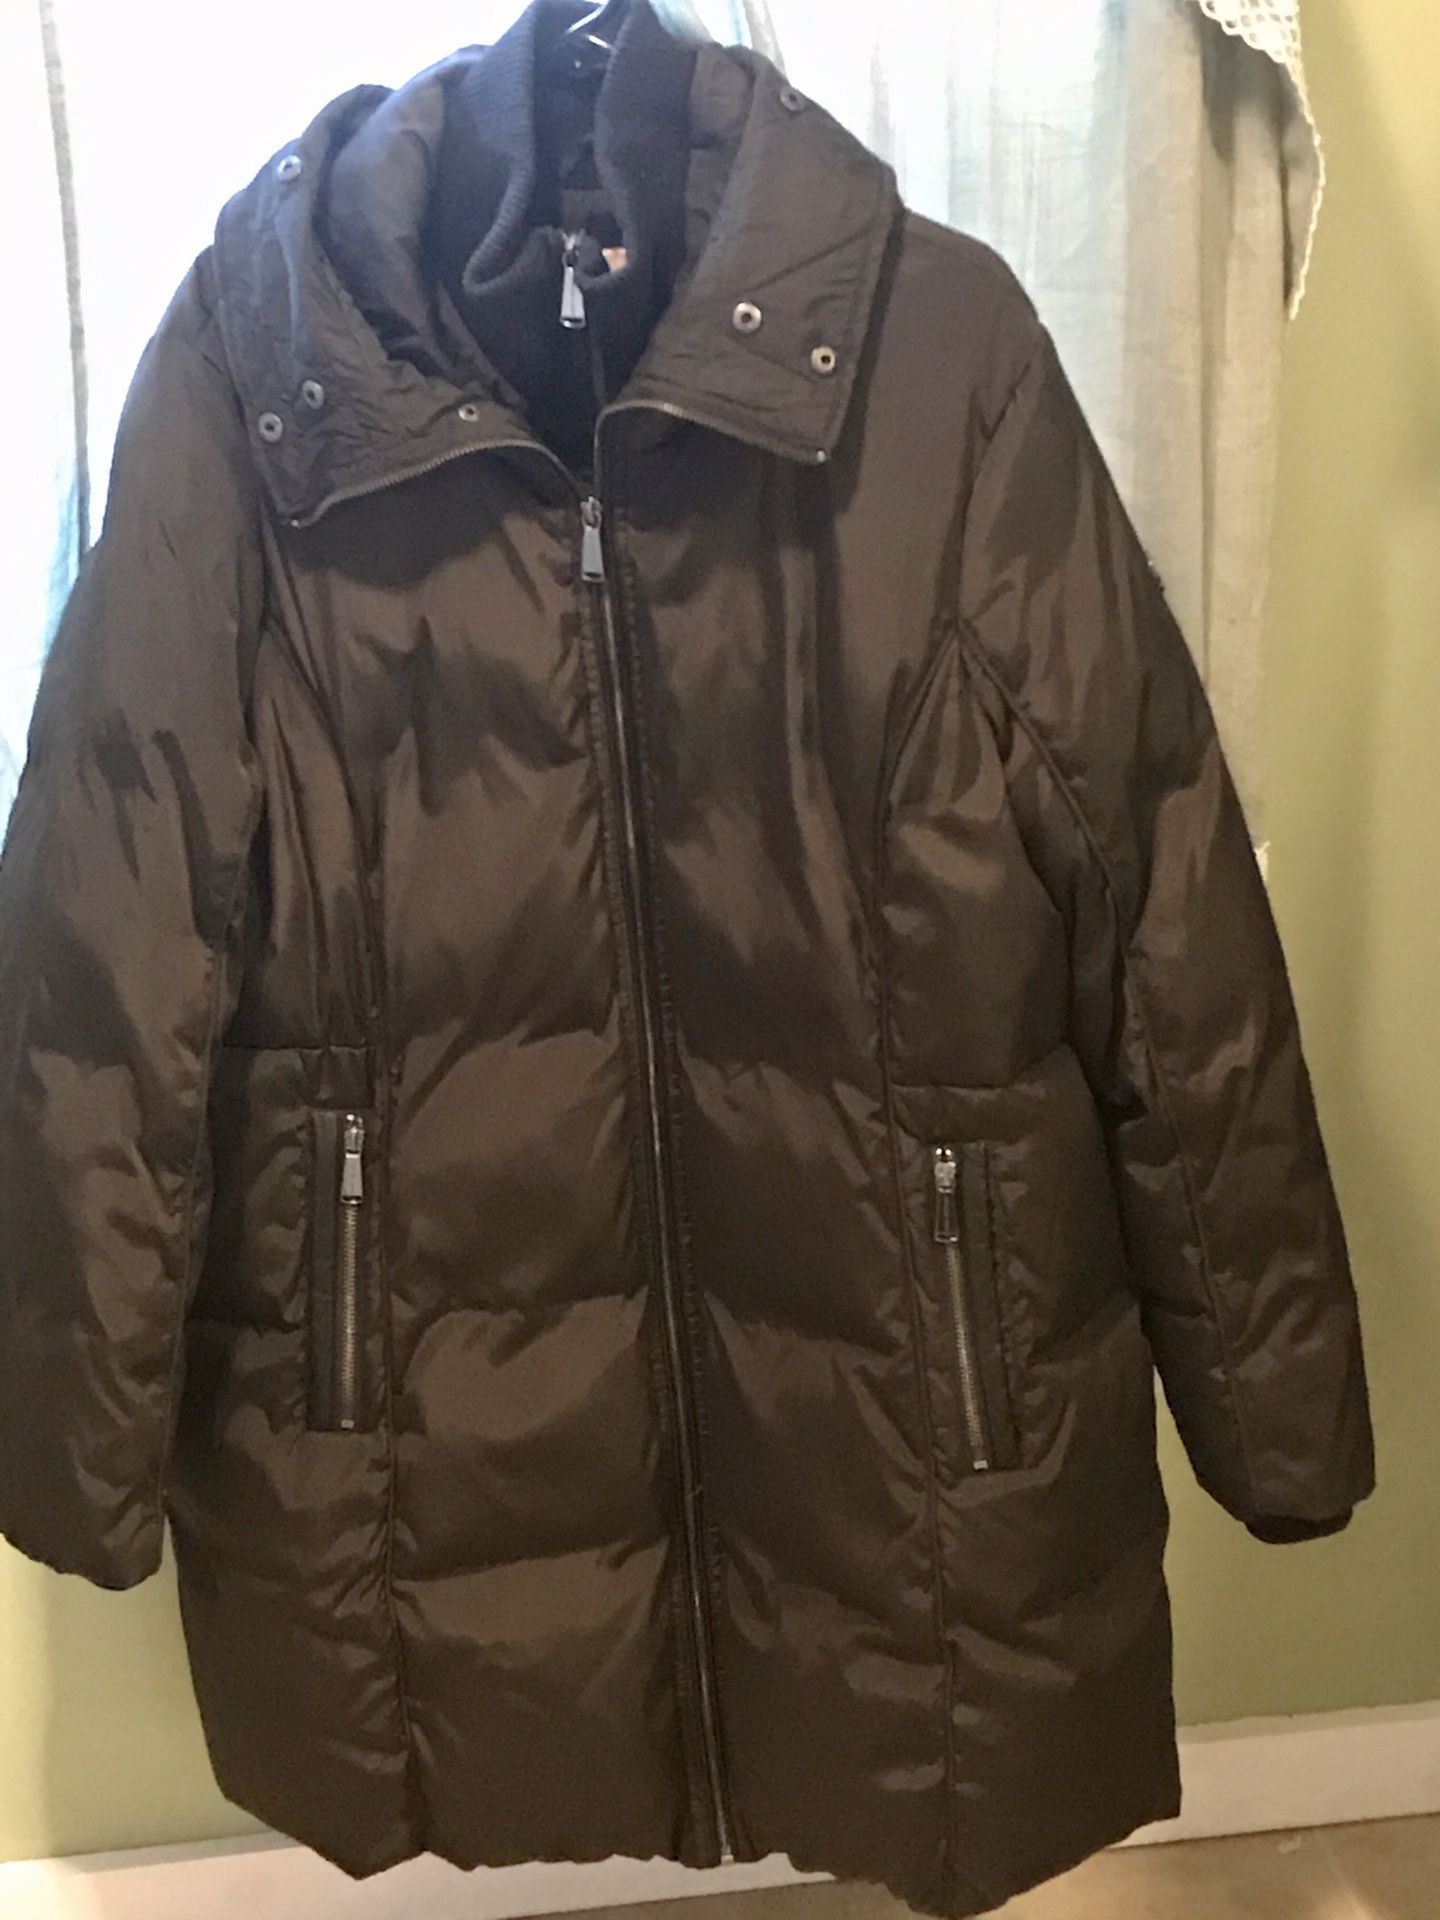 Michael Kors puffer coat